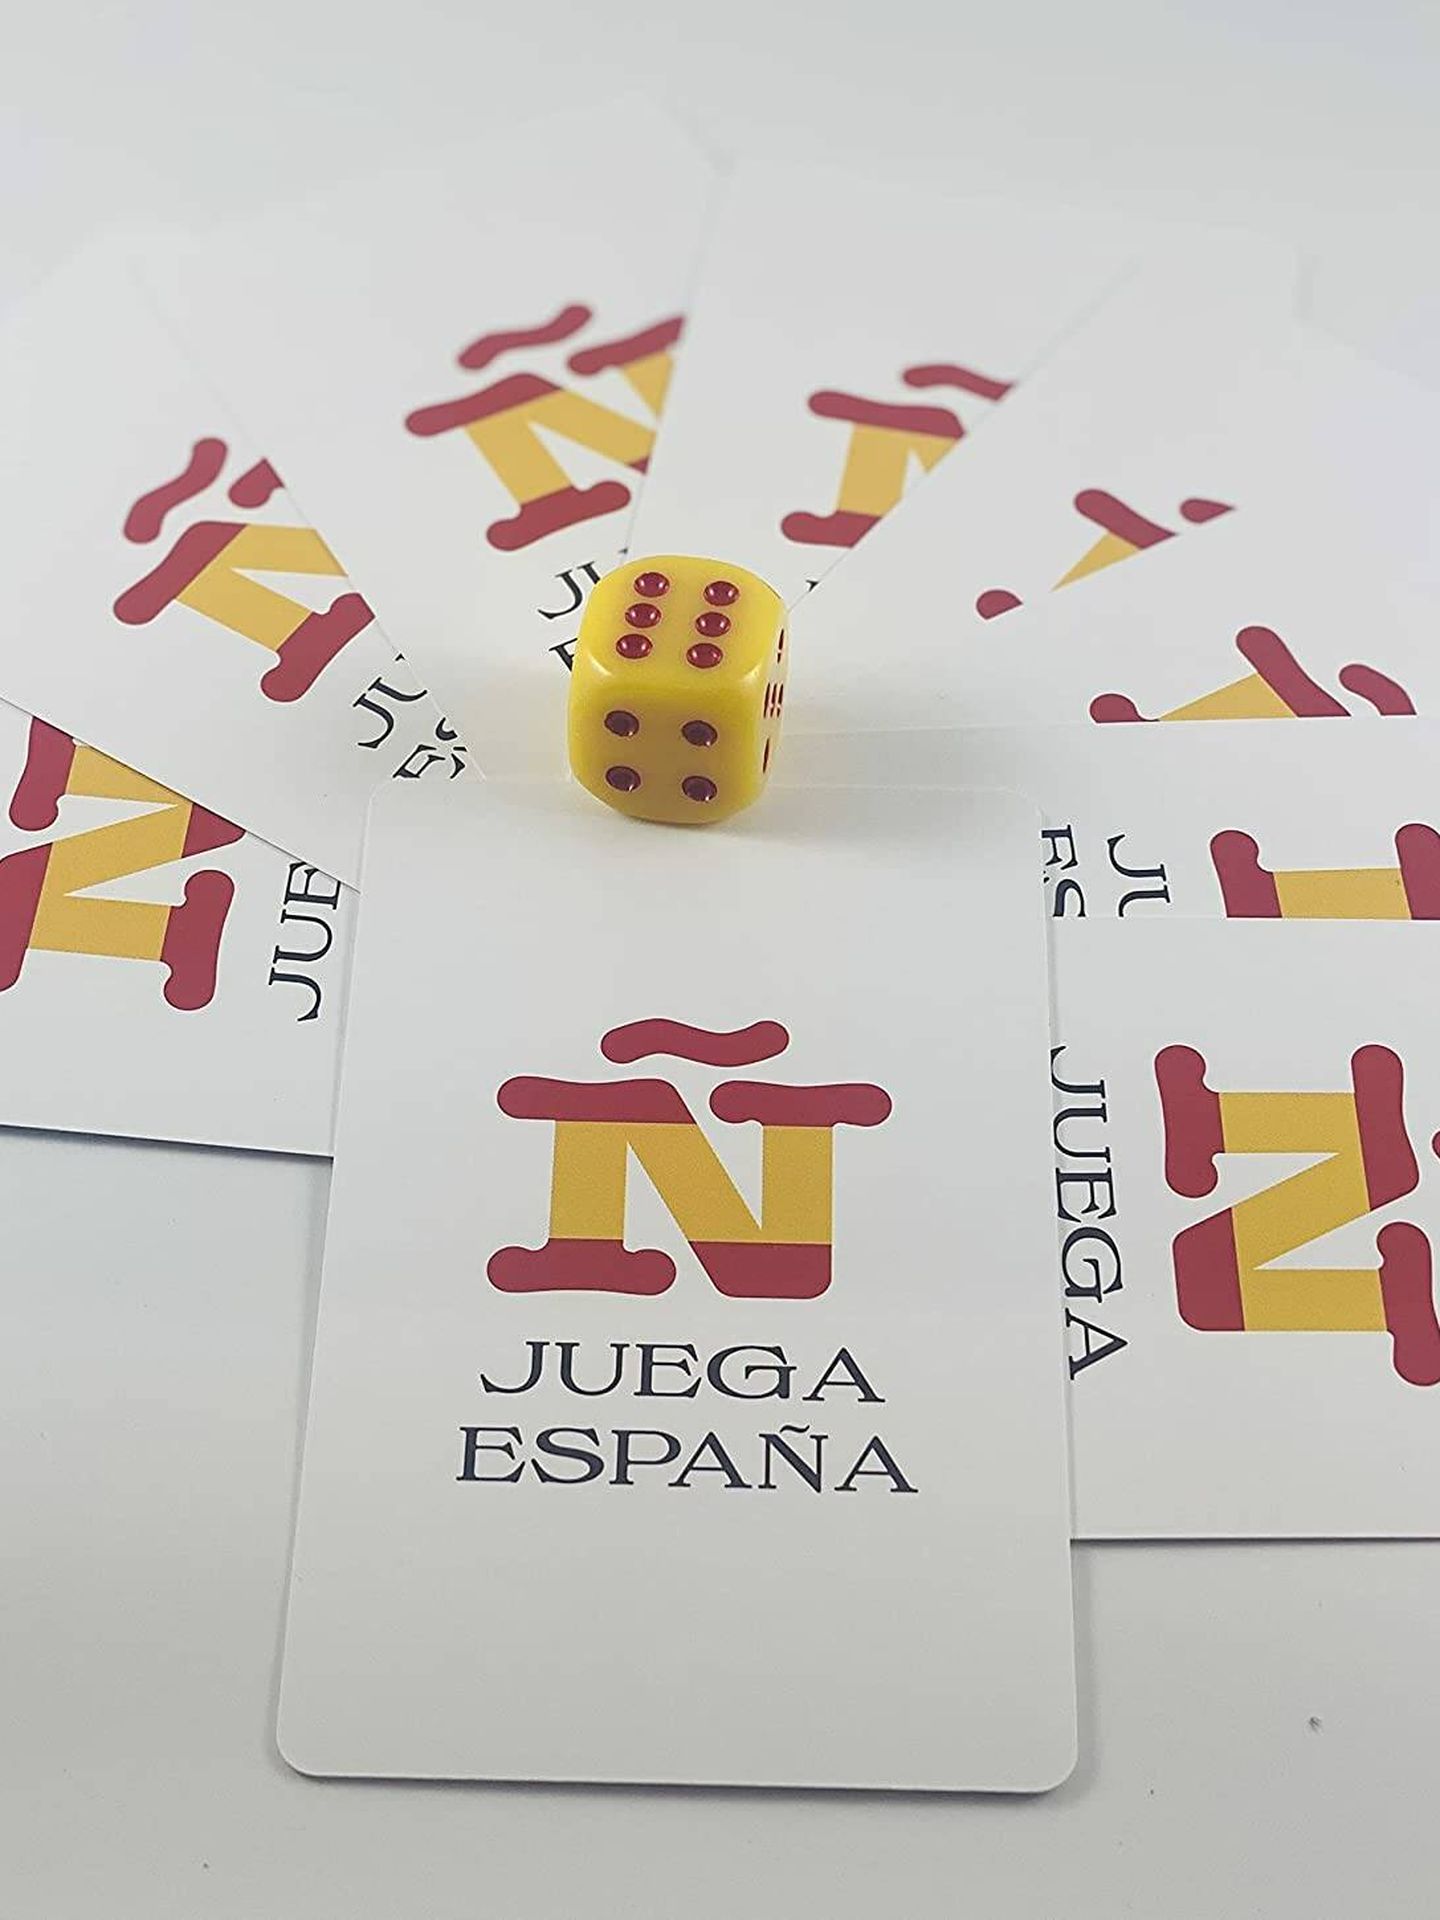 Detalle del juego 'Ñ Juega España', de Luis Alfonso de Borbón. (Amazon)